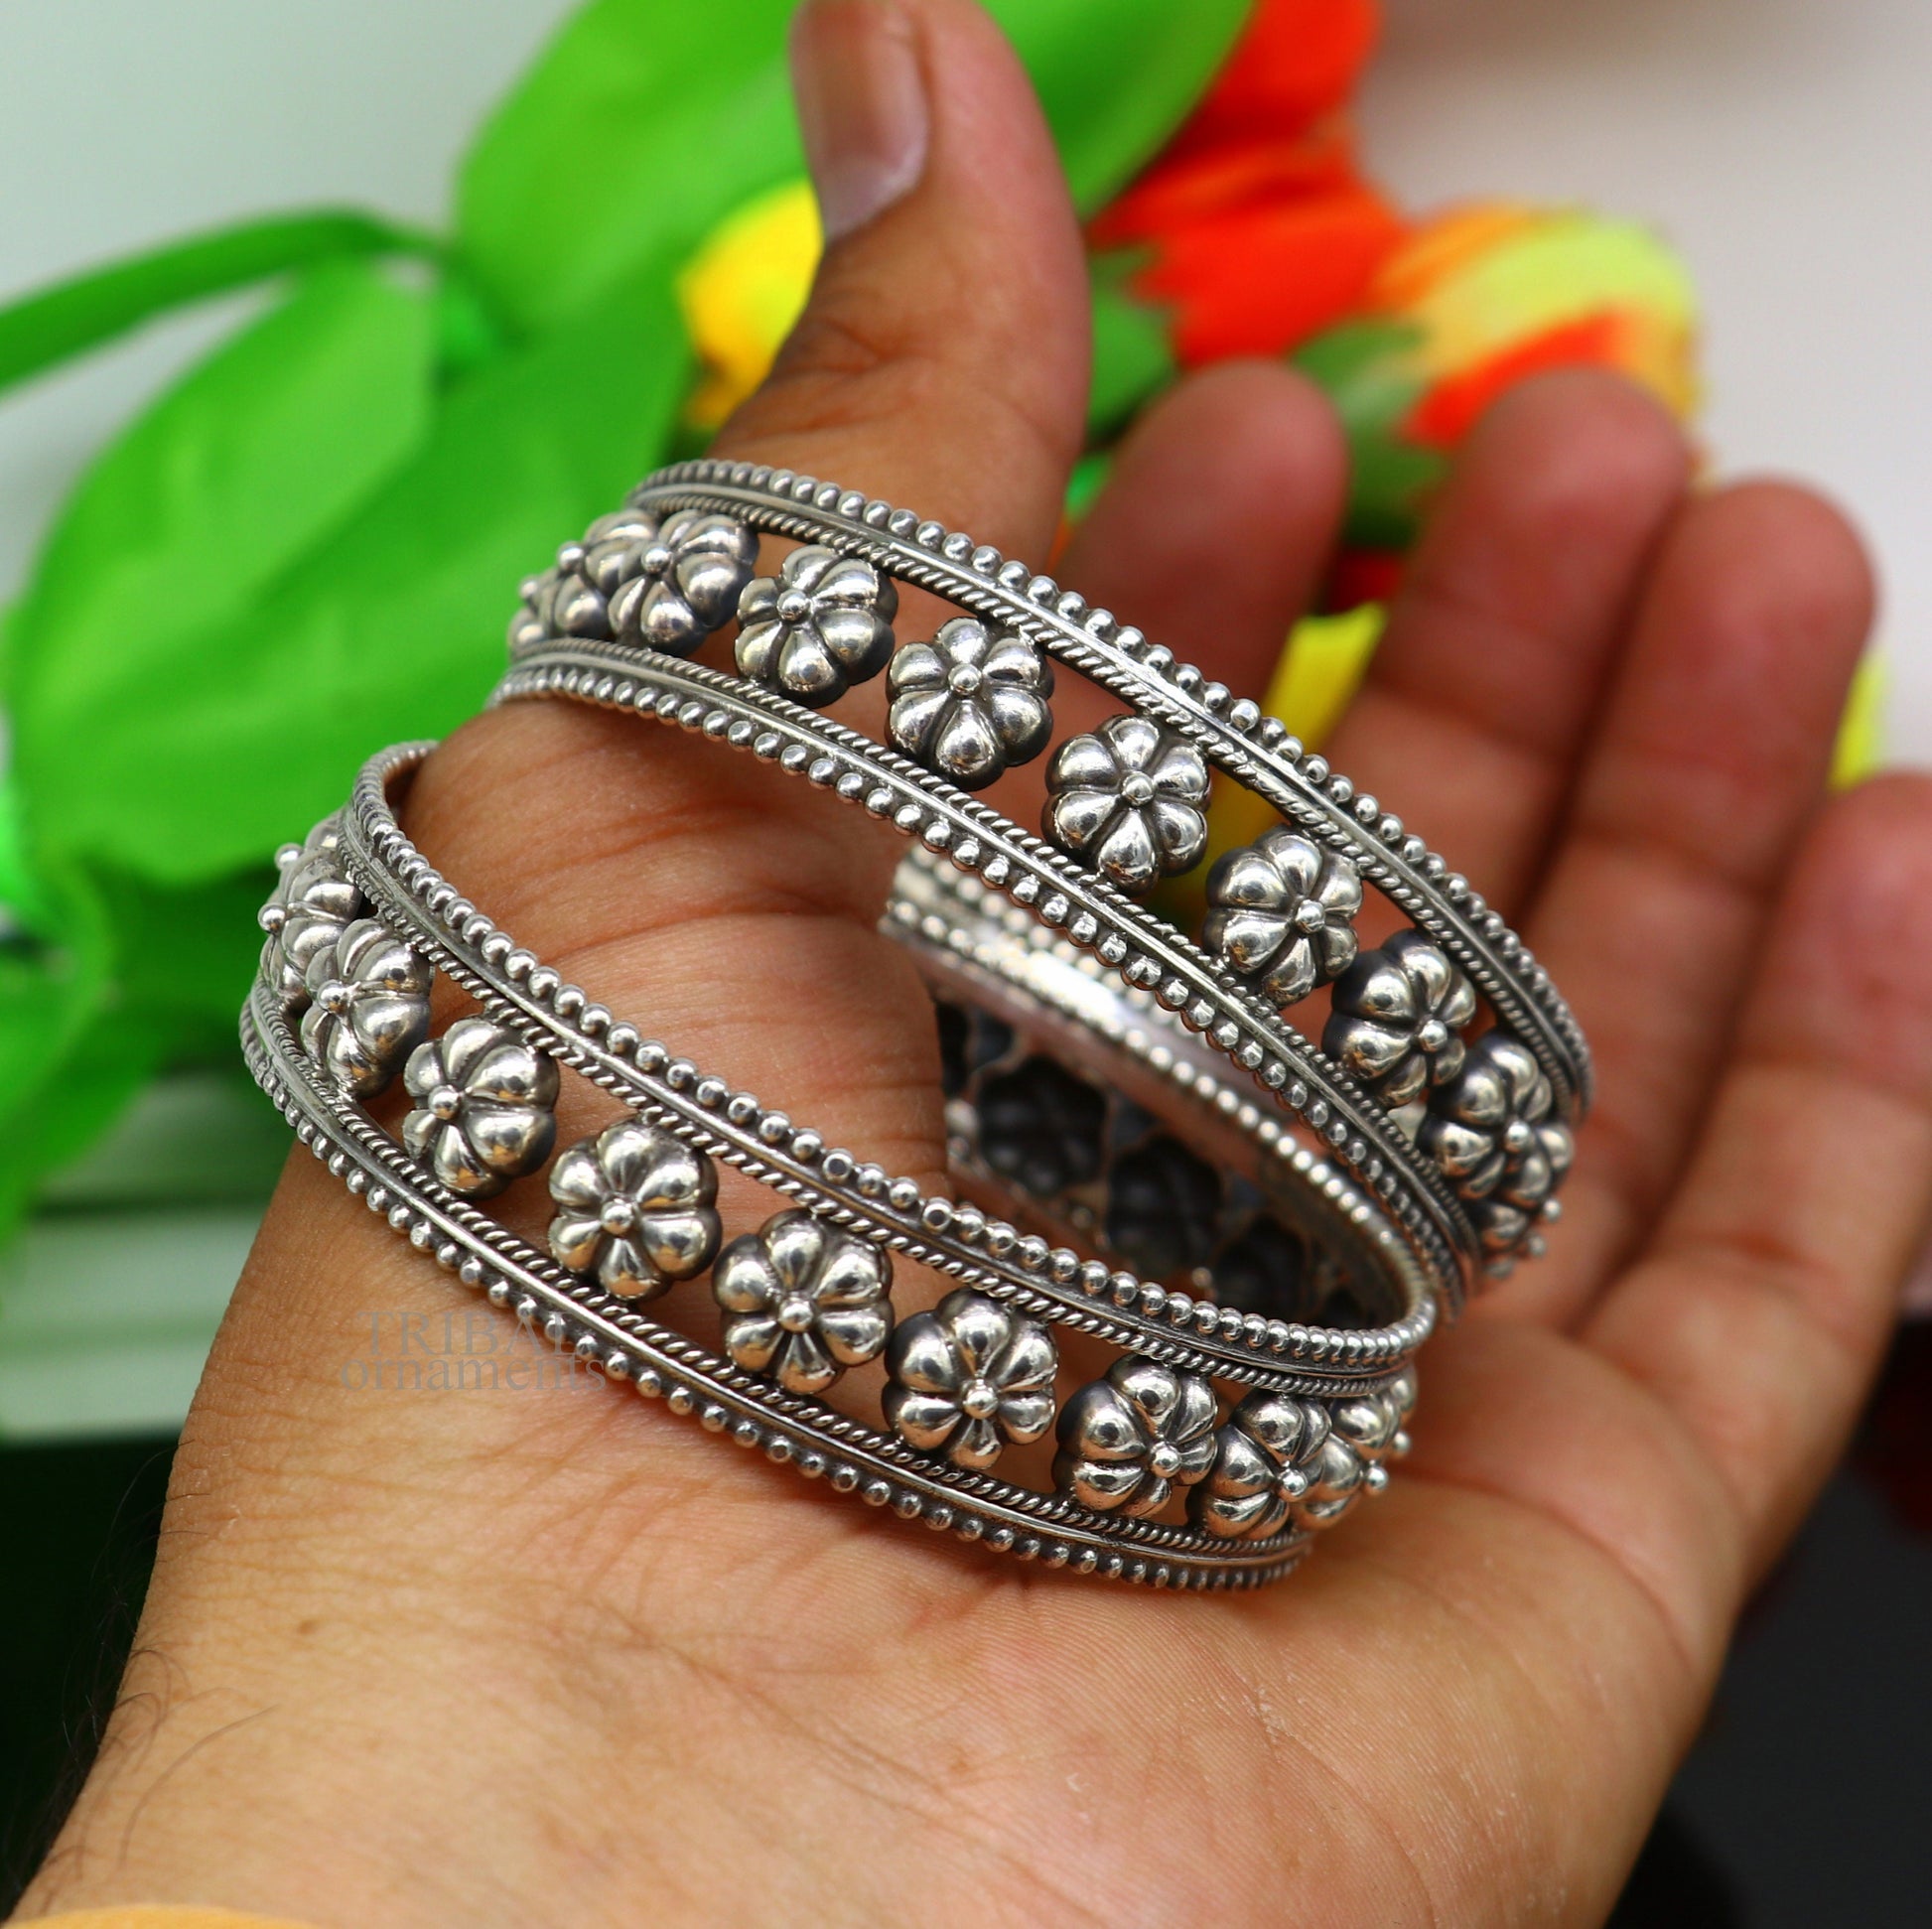 Floral style 925 sterling silver amazing customized bangle bracelet kada , best brides gifting ethnic stylish tribal jewelry ba118 Single bangle